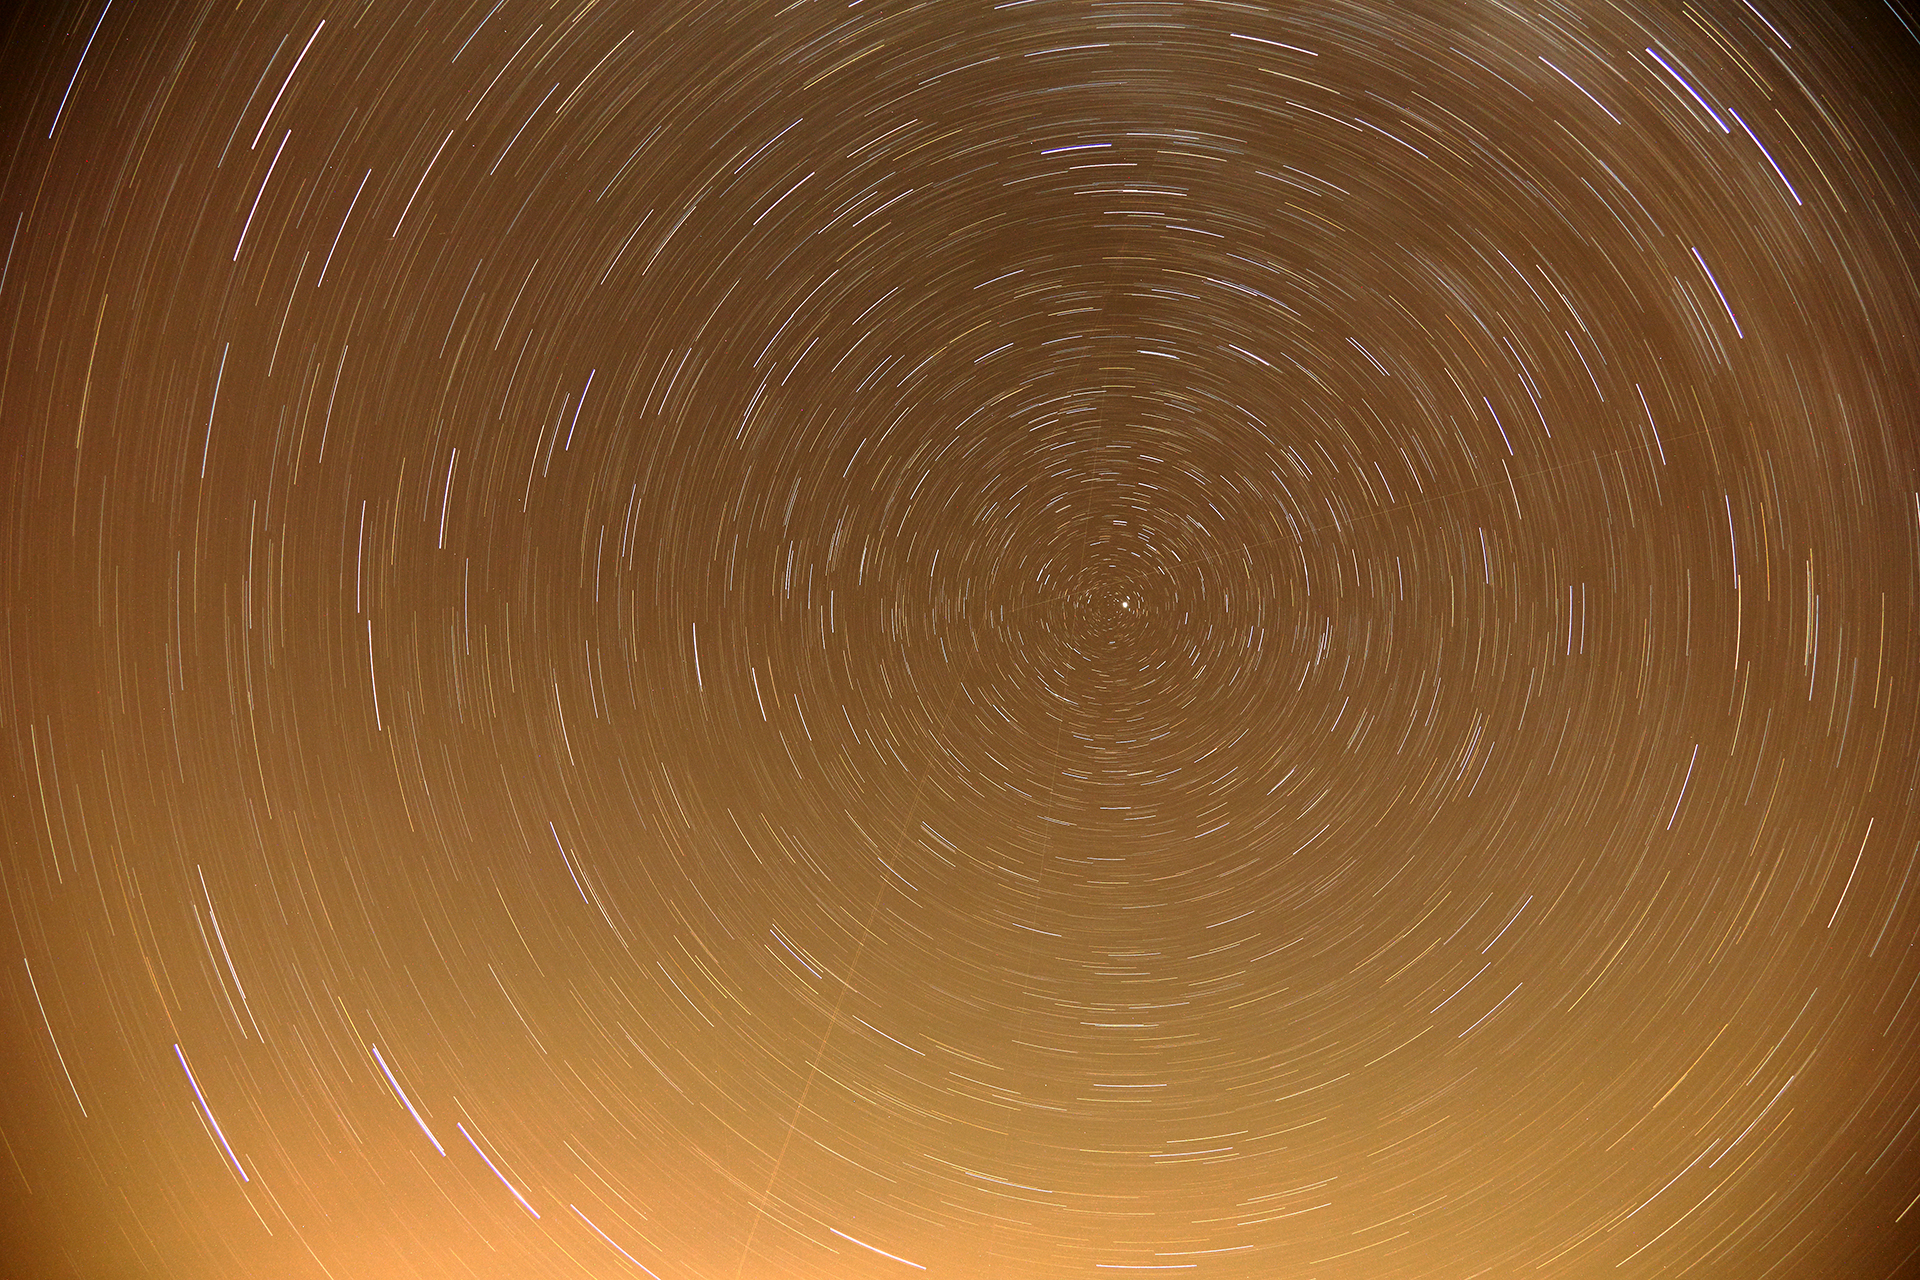 Ślady gwiazd - linie tworzone przez gwiazdy podczas fotografowania z długim czasem naświetlania - efekt ruchu obrotowego Ziemi.